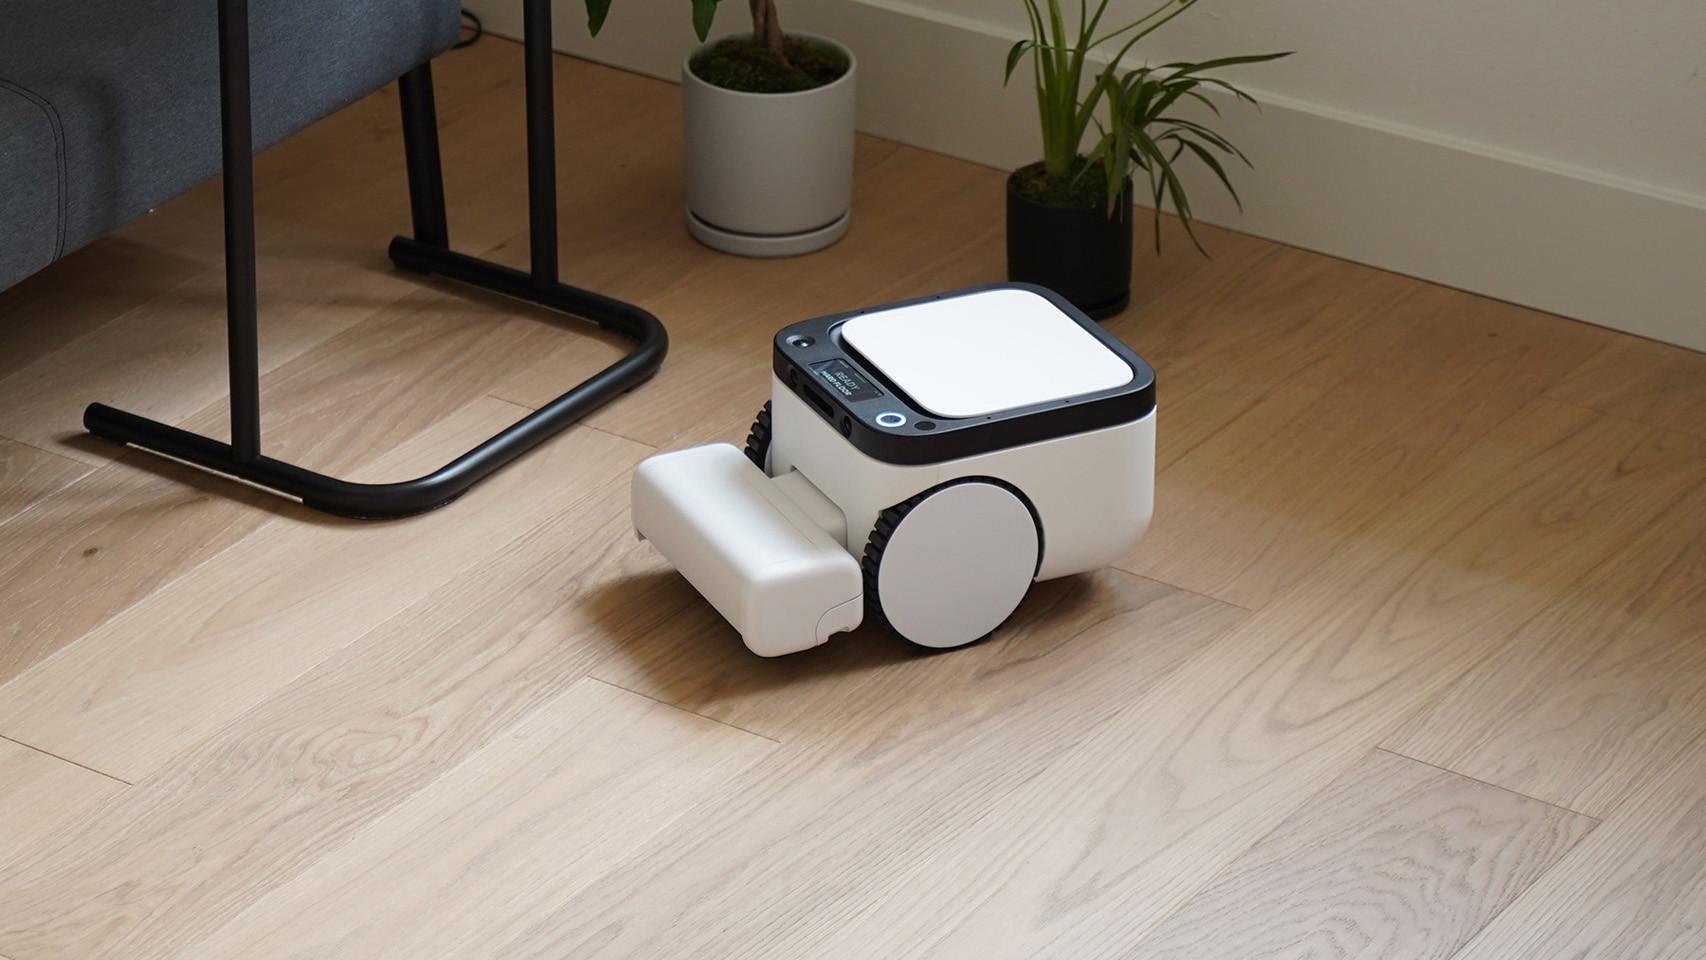 Probamos el robot aspirador de Xiaomi que limpia tu casa (y no tu